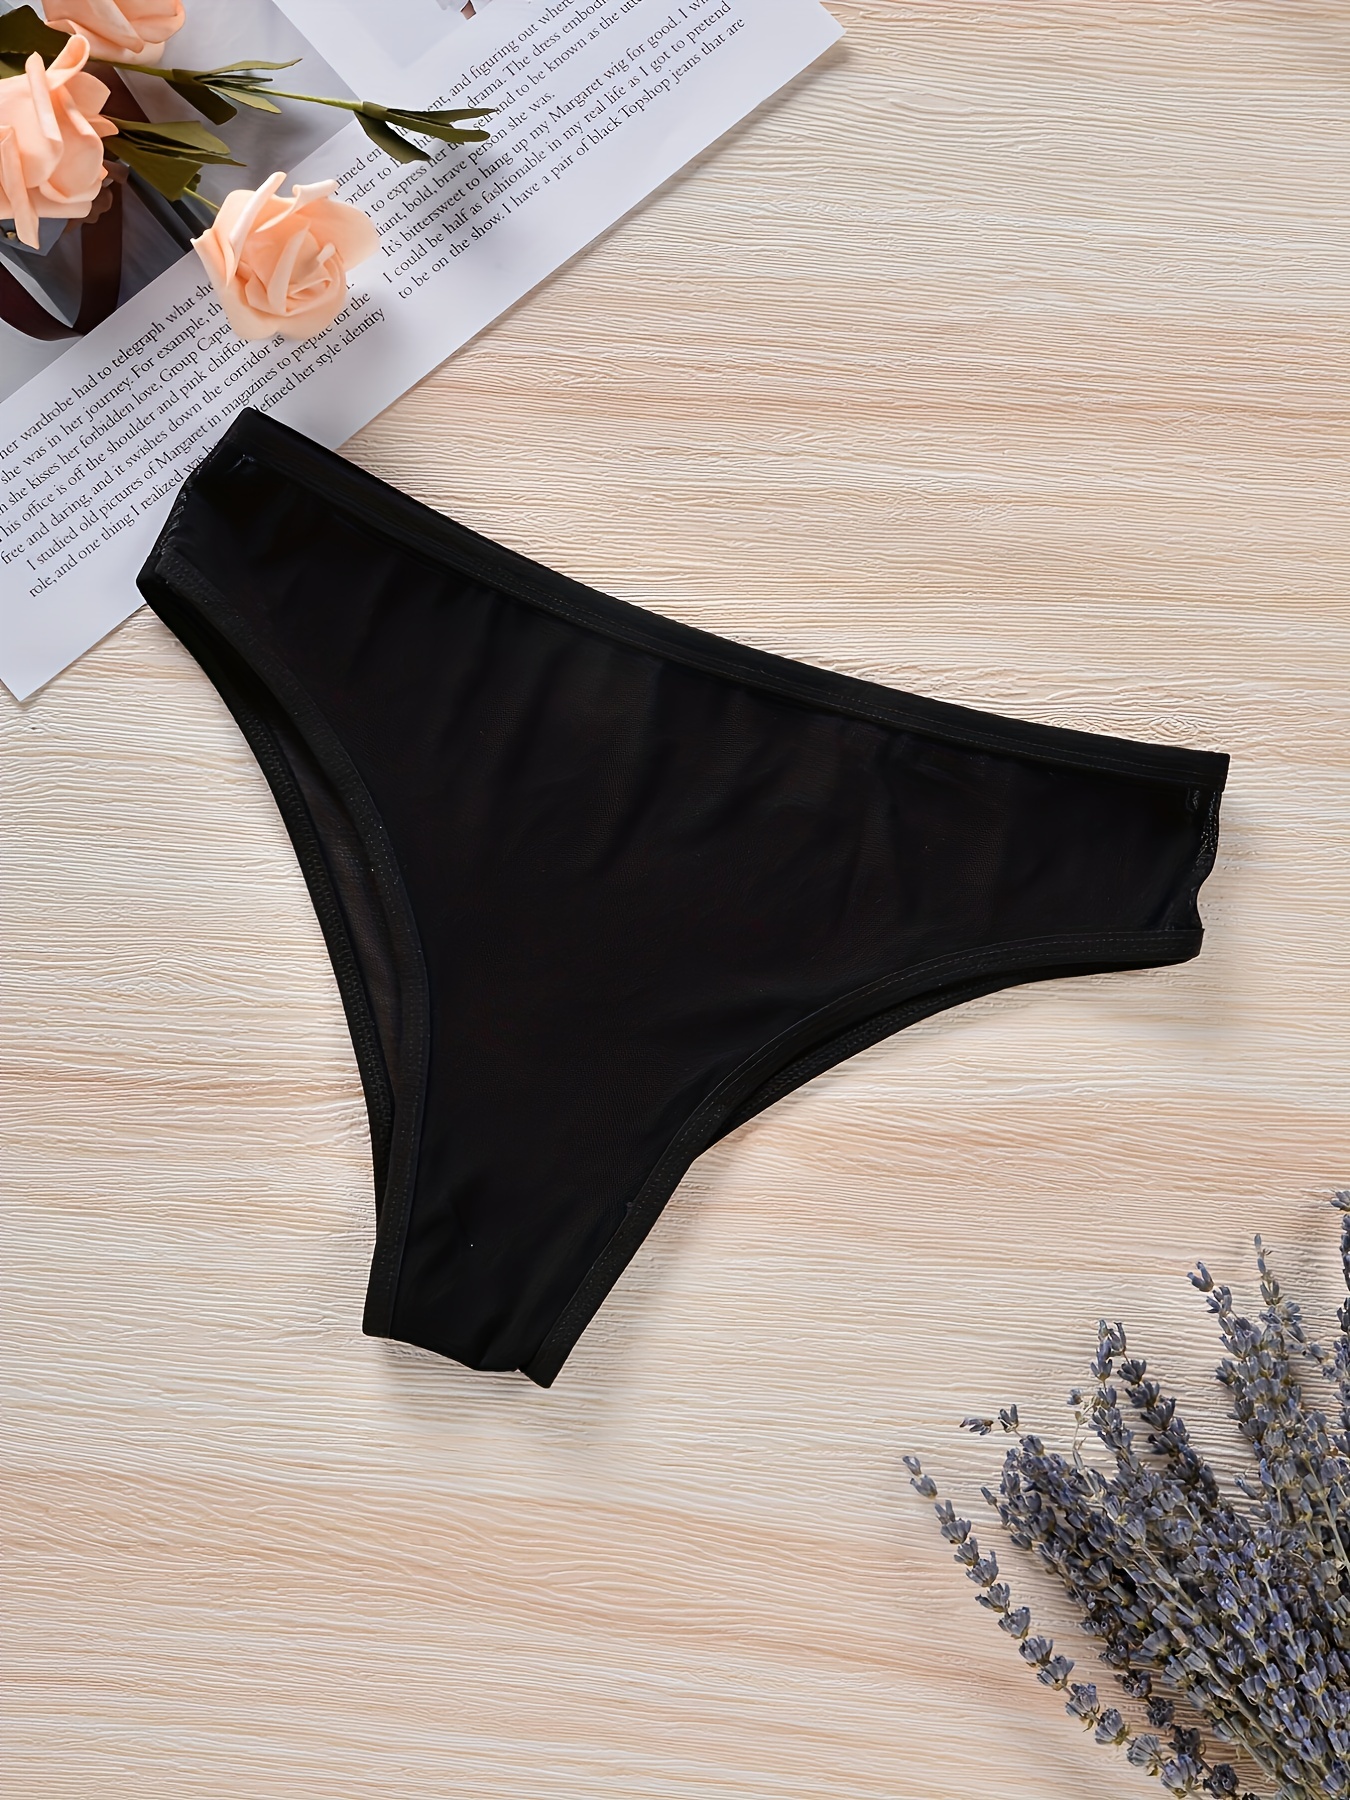 Reveal Lingerie Women's Mesh Thong Panties  